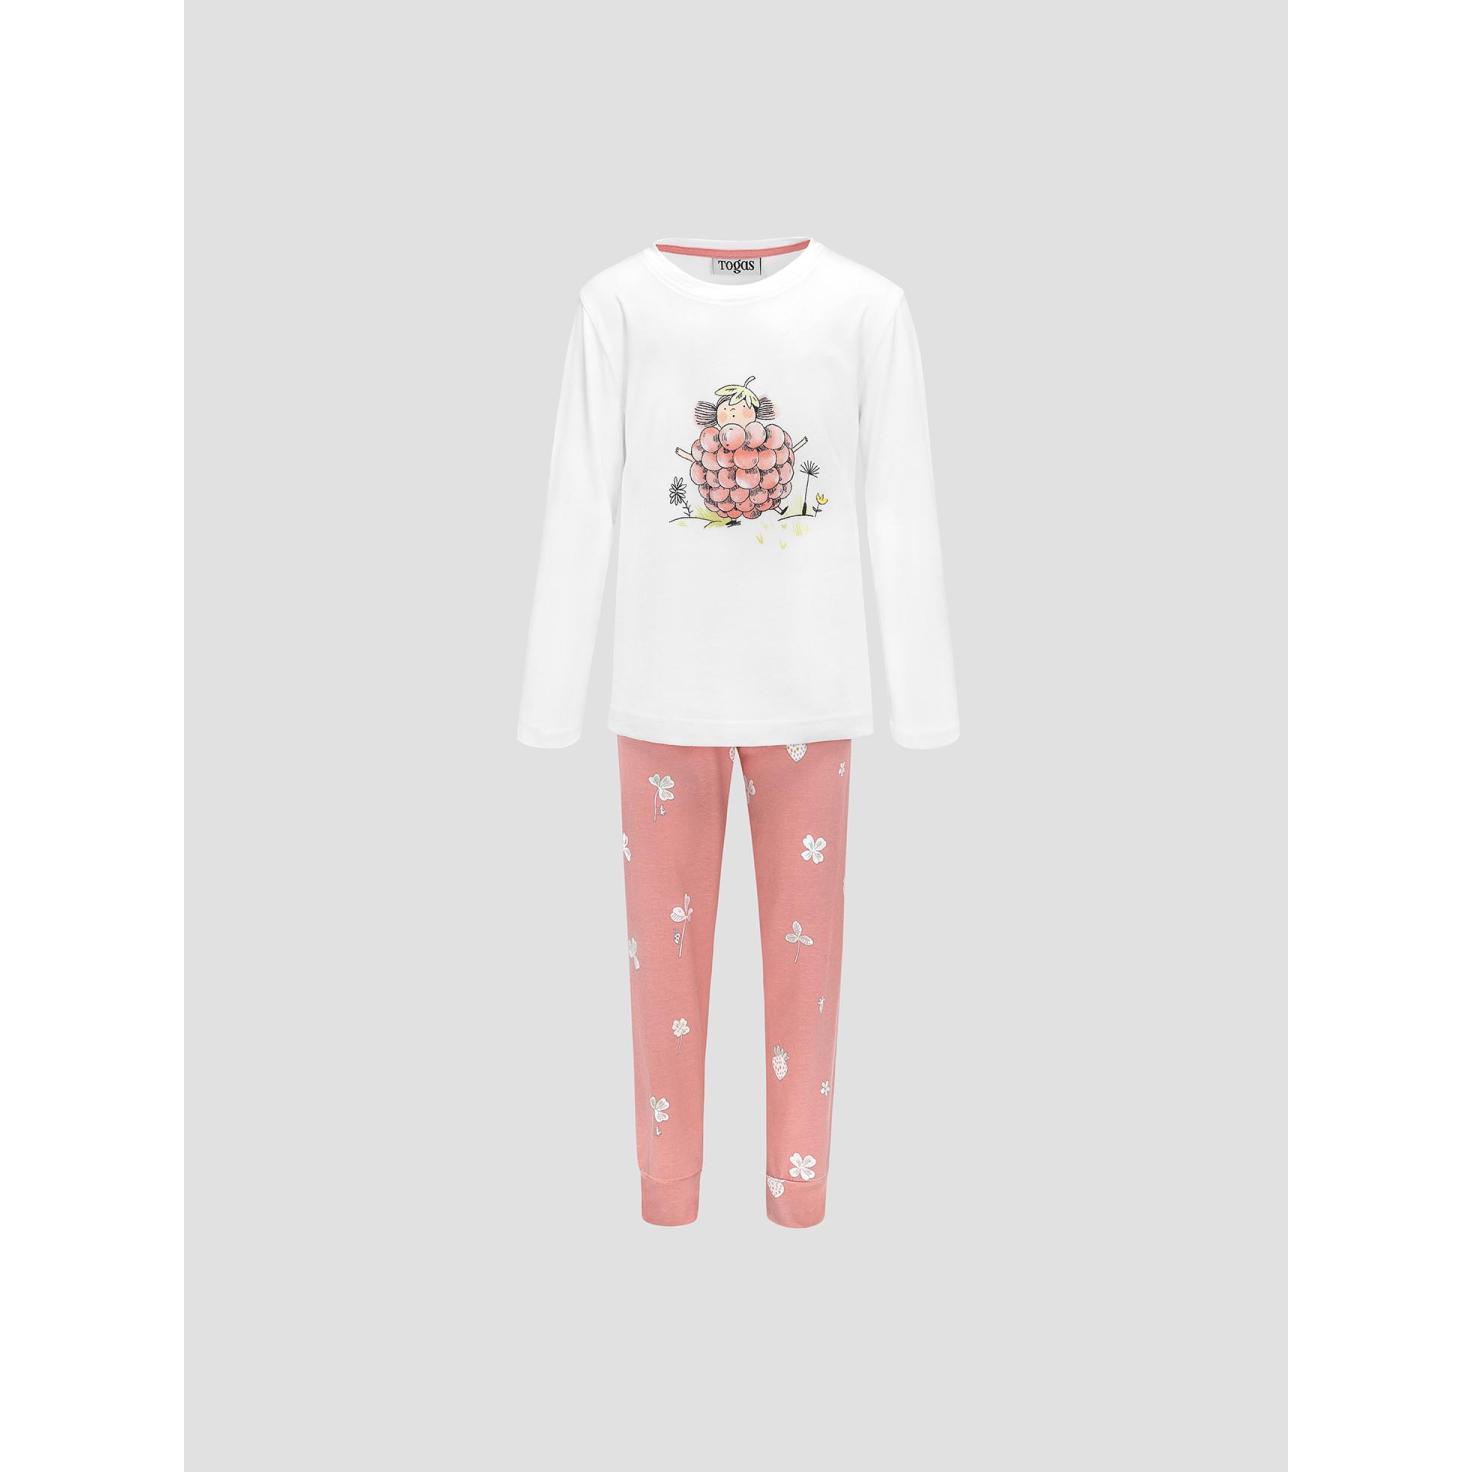 Пижама для девочек Kids by togas Стробби бело-розовый 116-122 см жен пижама с шортами инь янь белый р 52